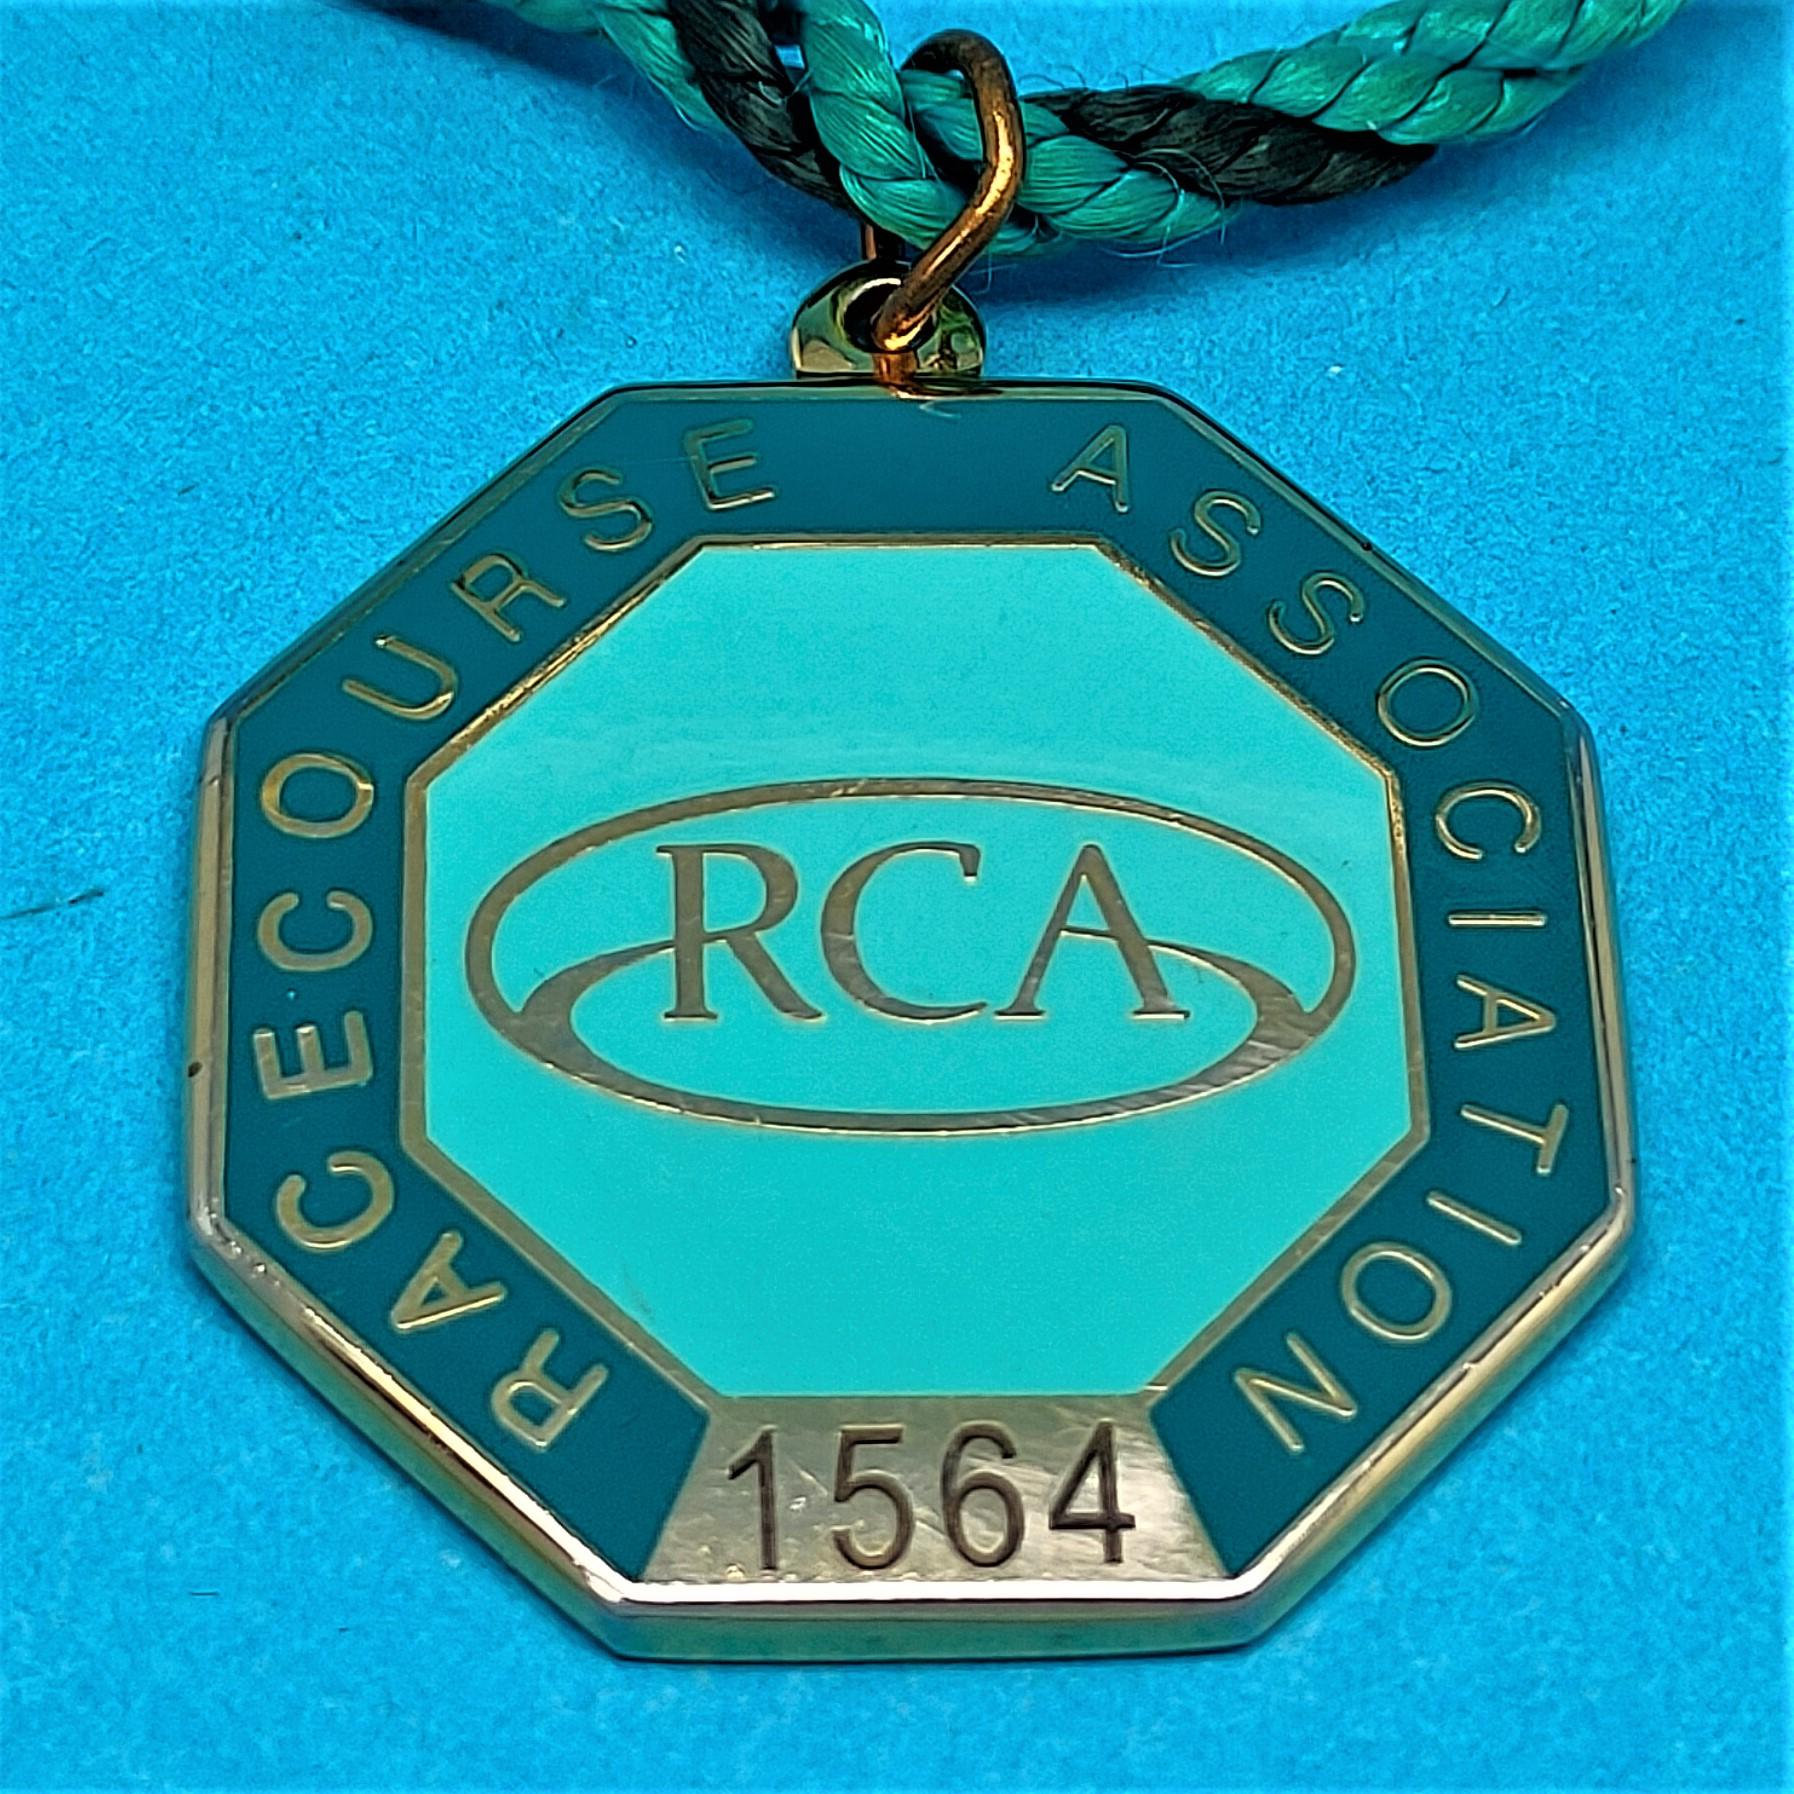 Racecourse Association 2014